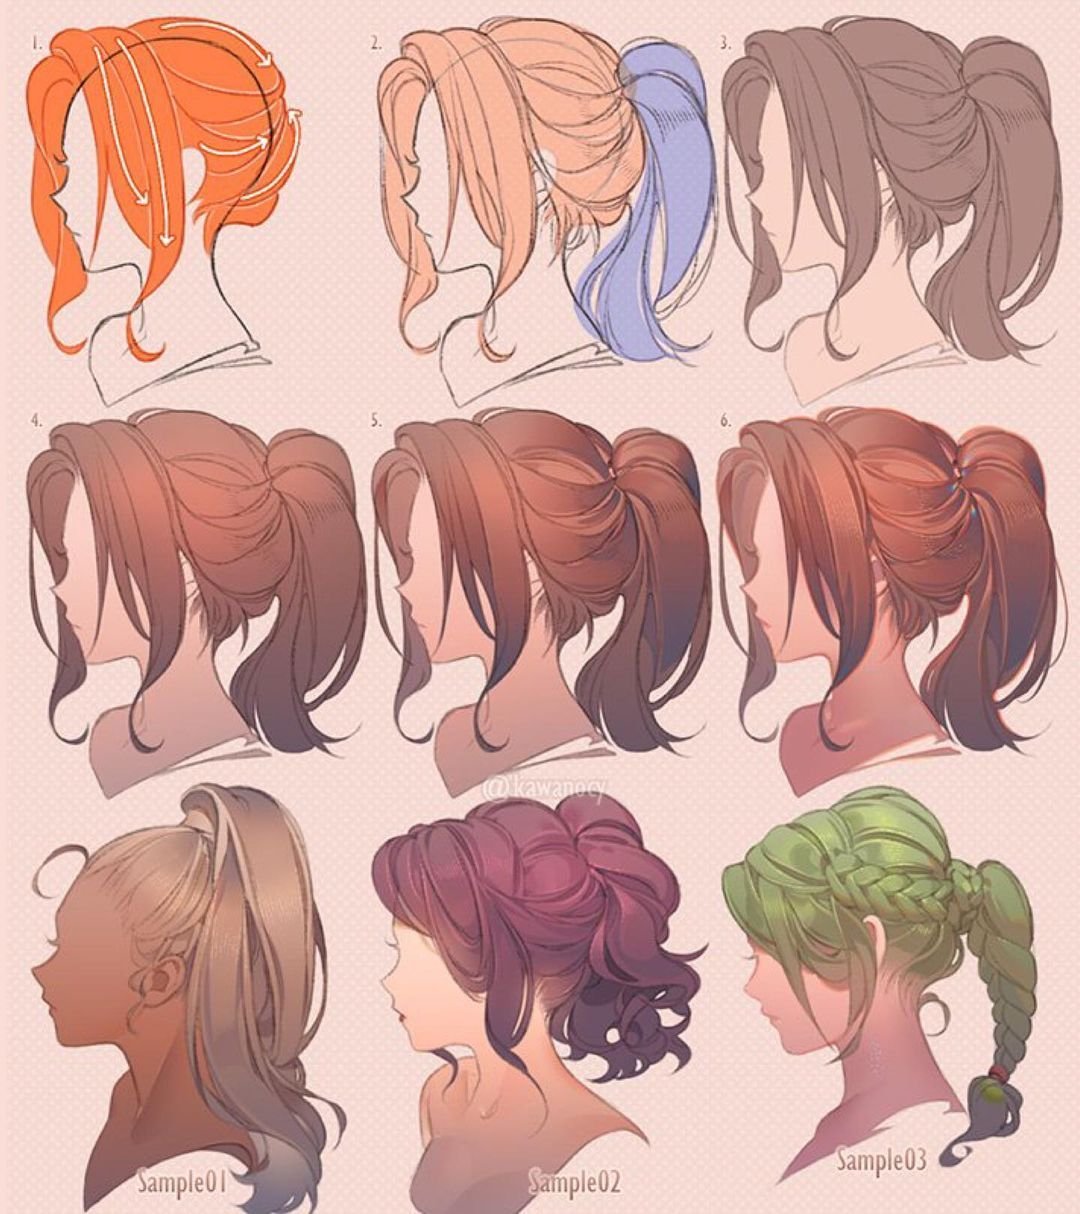 Цвета волос и прически персонажей